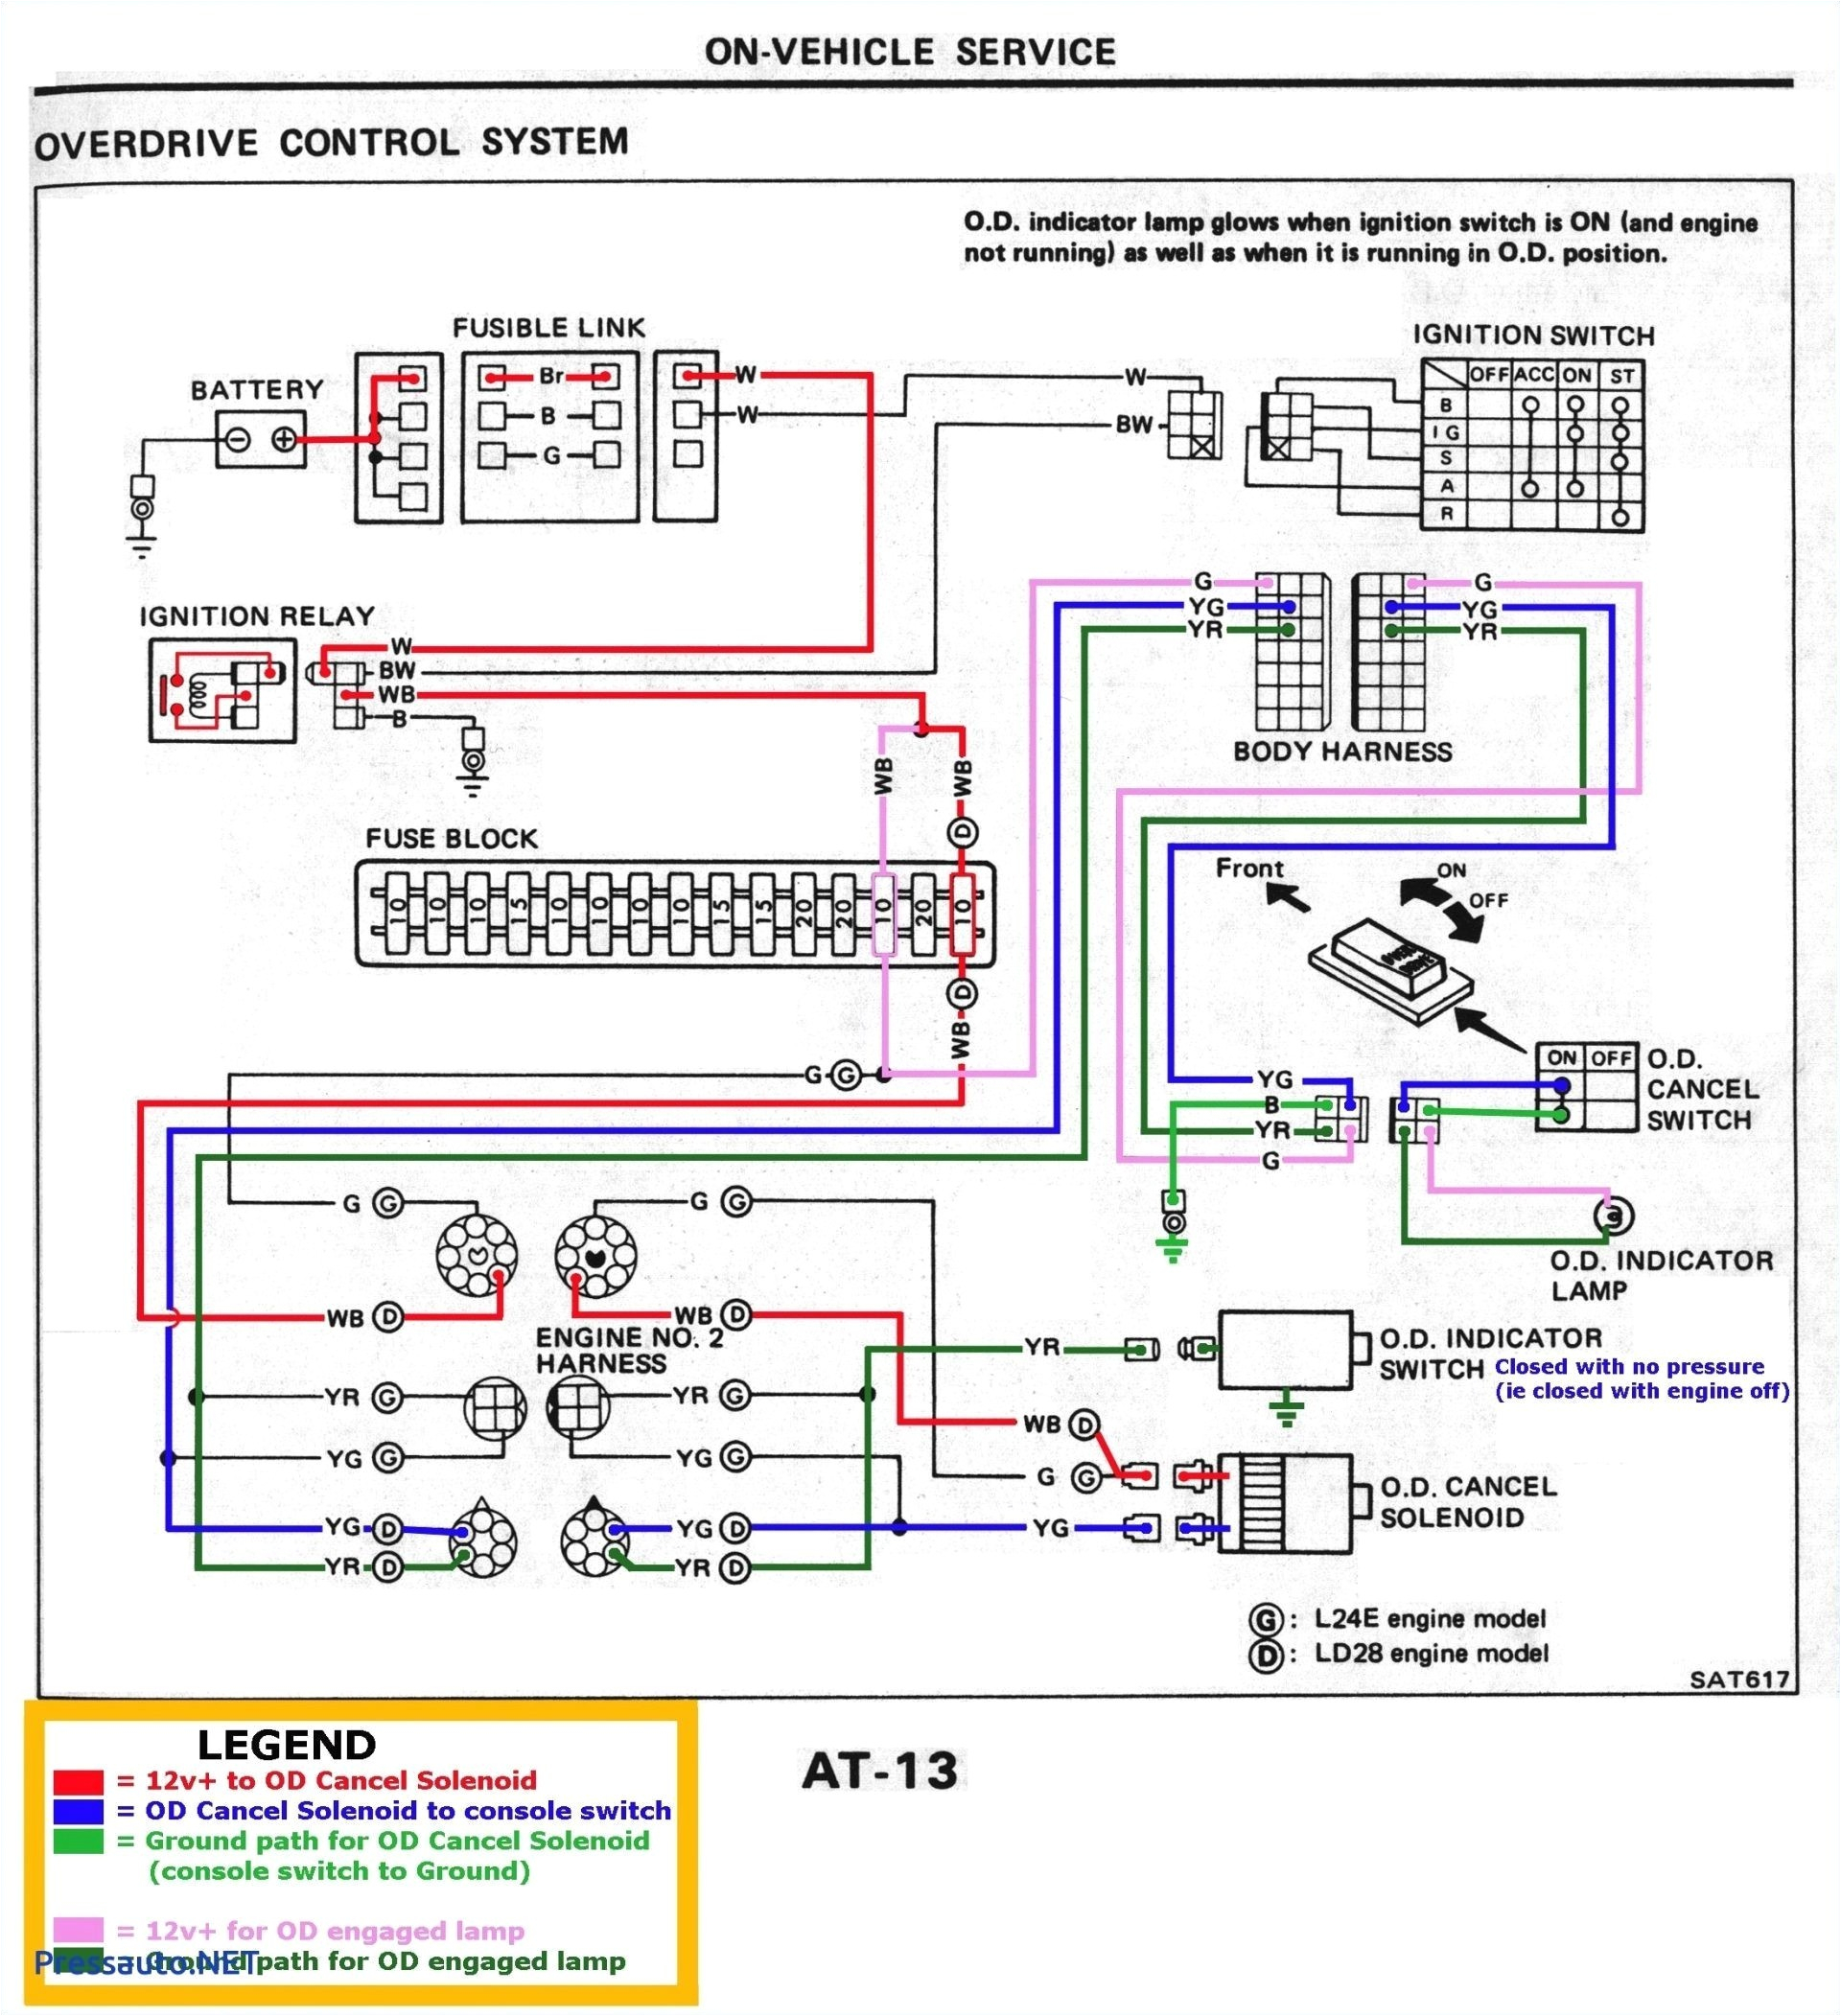 xbox 360 power supply diagram zombie light switch wiring diagram fresh wiring diagram xbox 360 of xbox 360 power supply diagram jpg